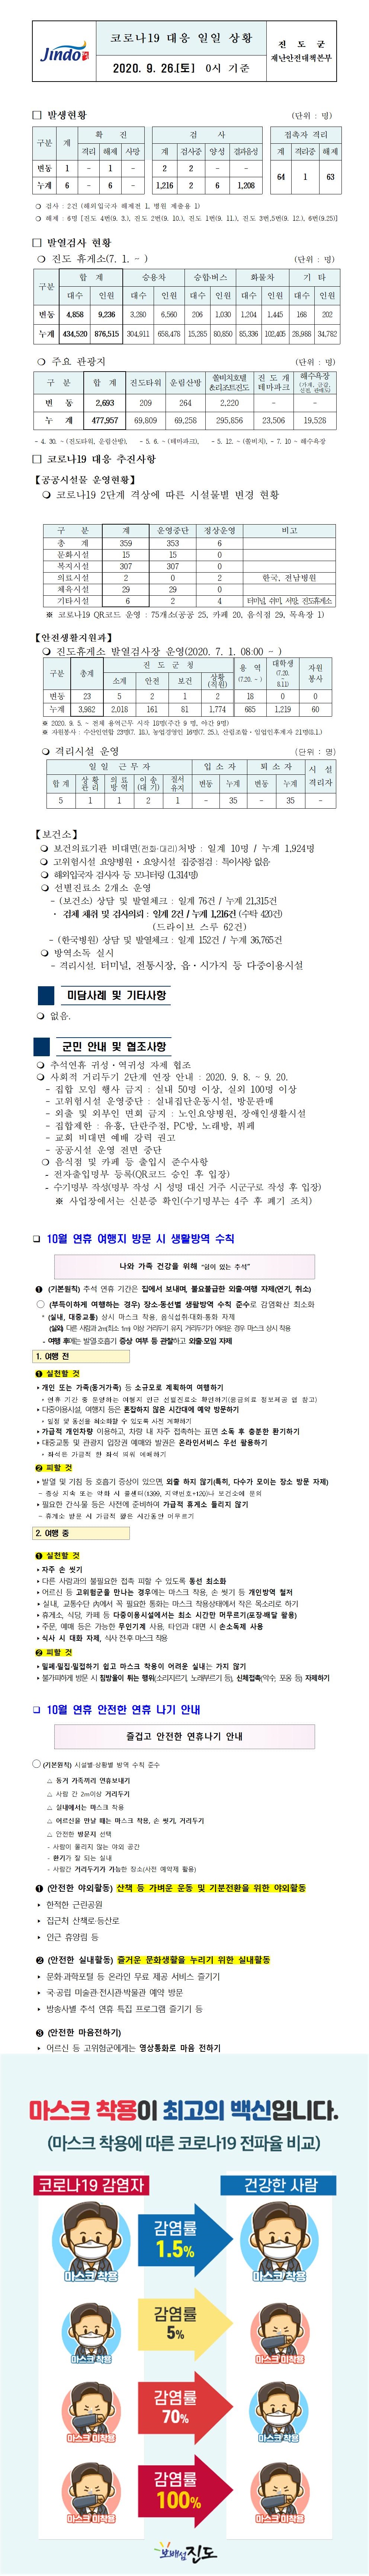 코로나19대응 일일 상황 보고(9월26일 0시 기준) 첨부#1